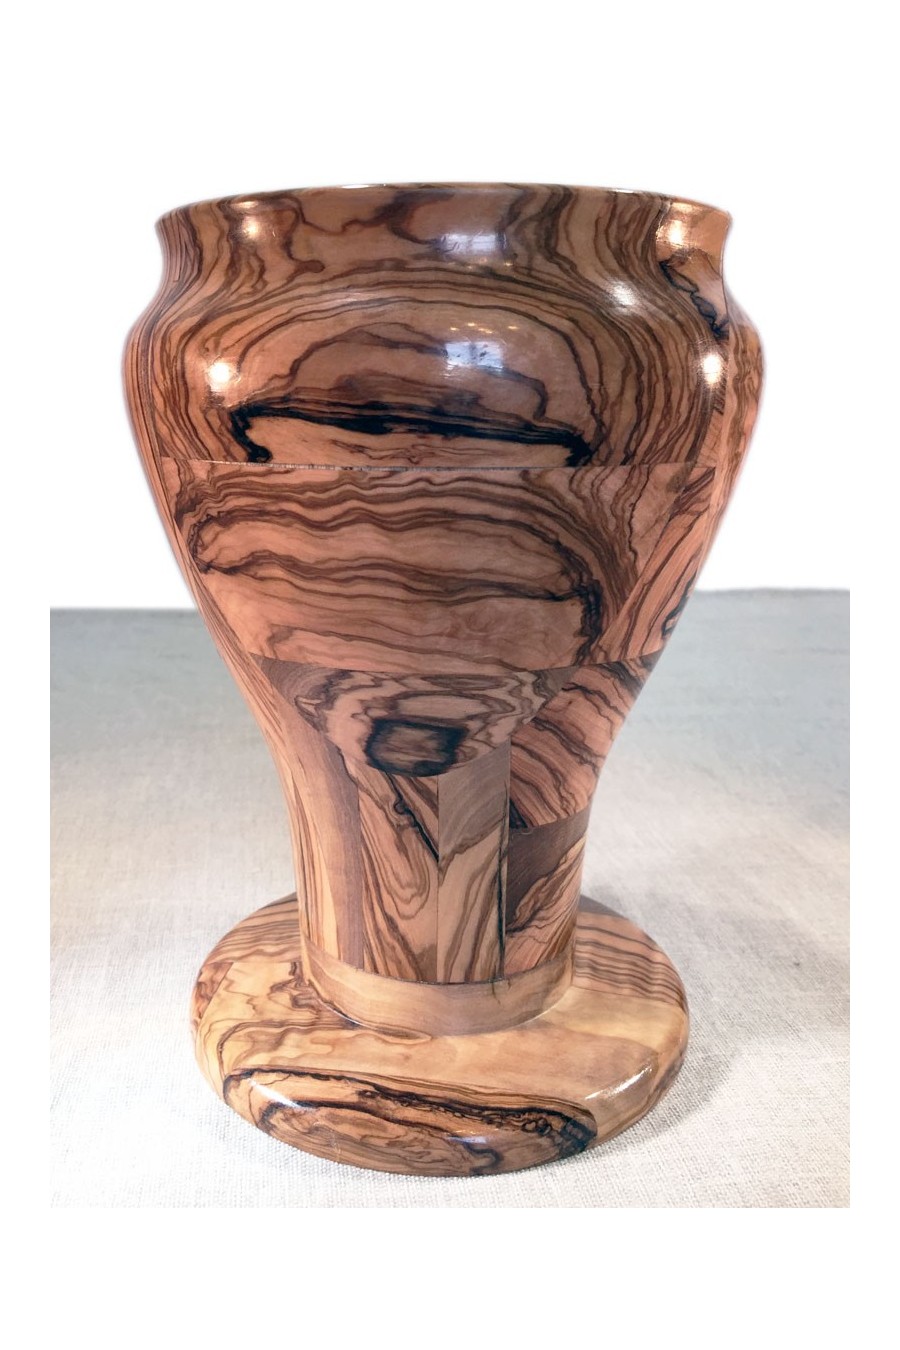 Vaso campana in legno di olivo